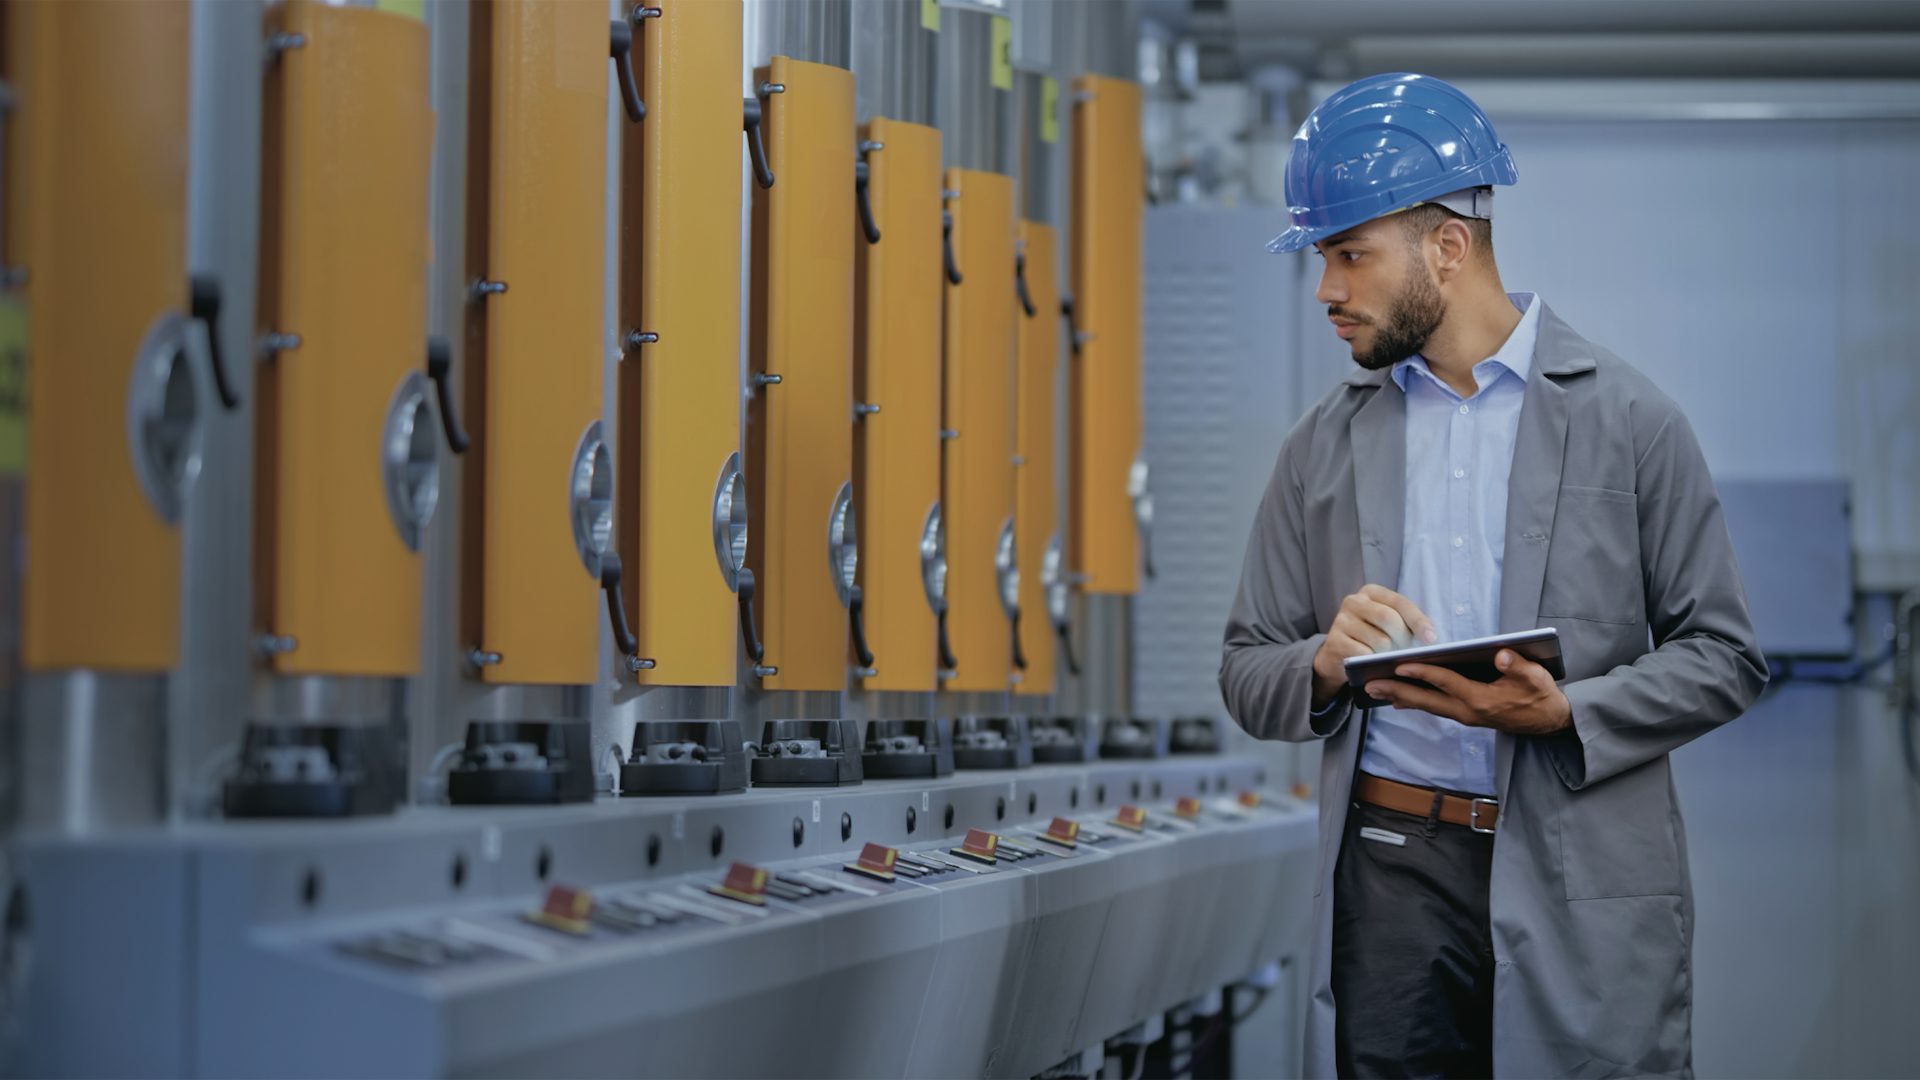 Uomo che indossa un elmetto e tiene in mano un tablet che ispeziona le macchine di produzione in un ambiente industriale.